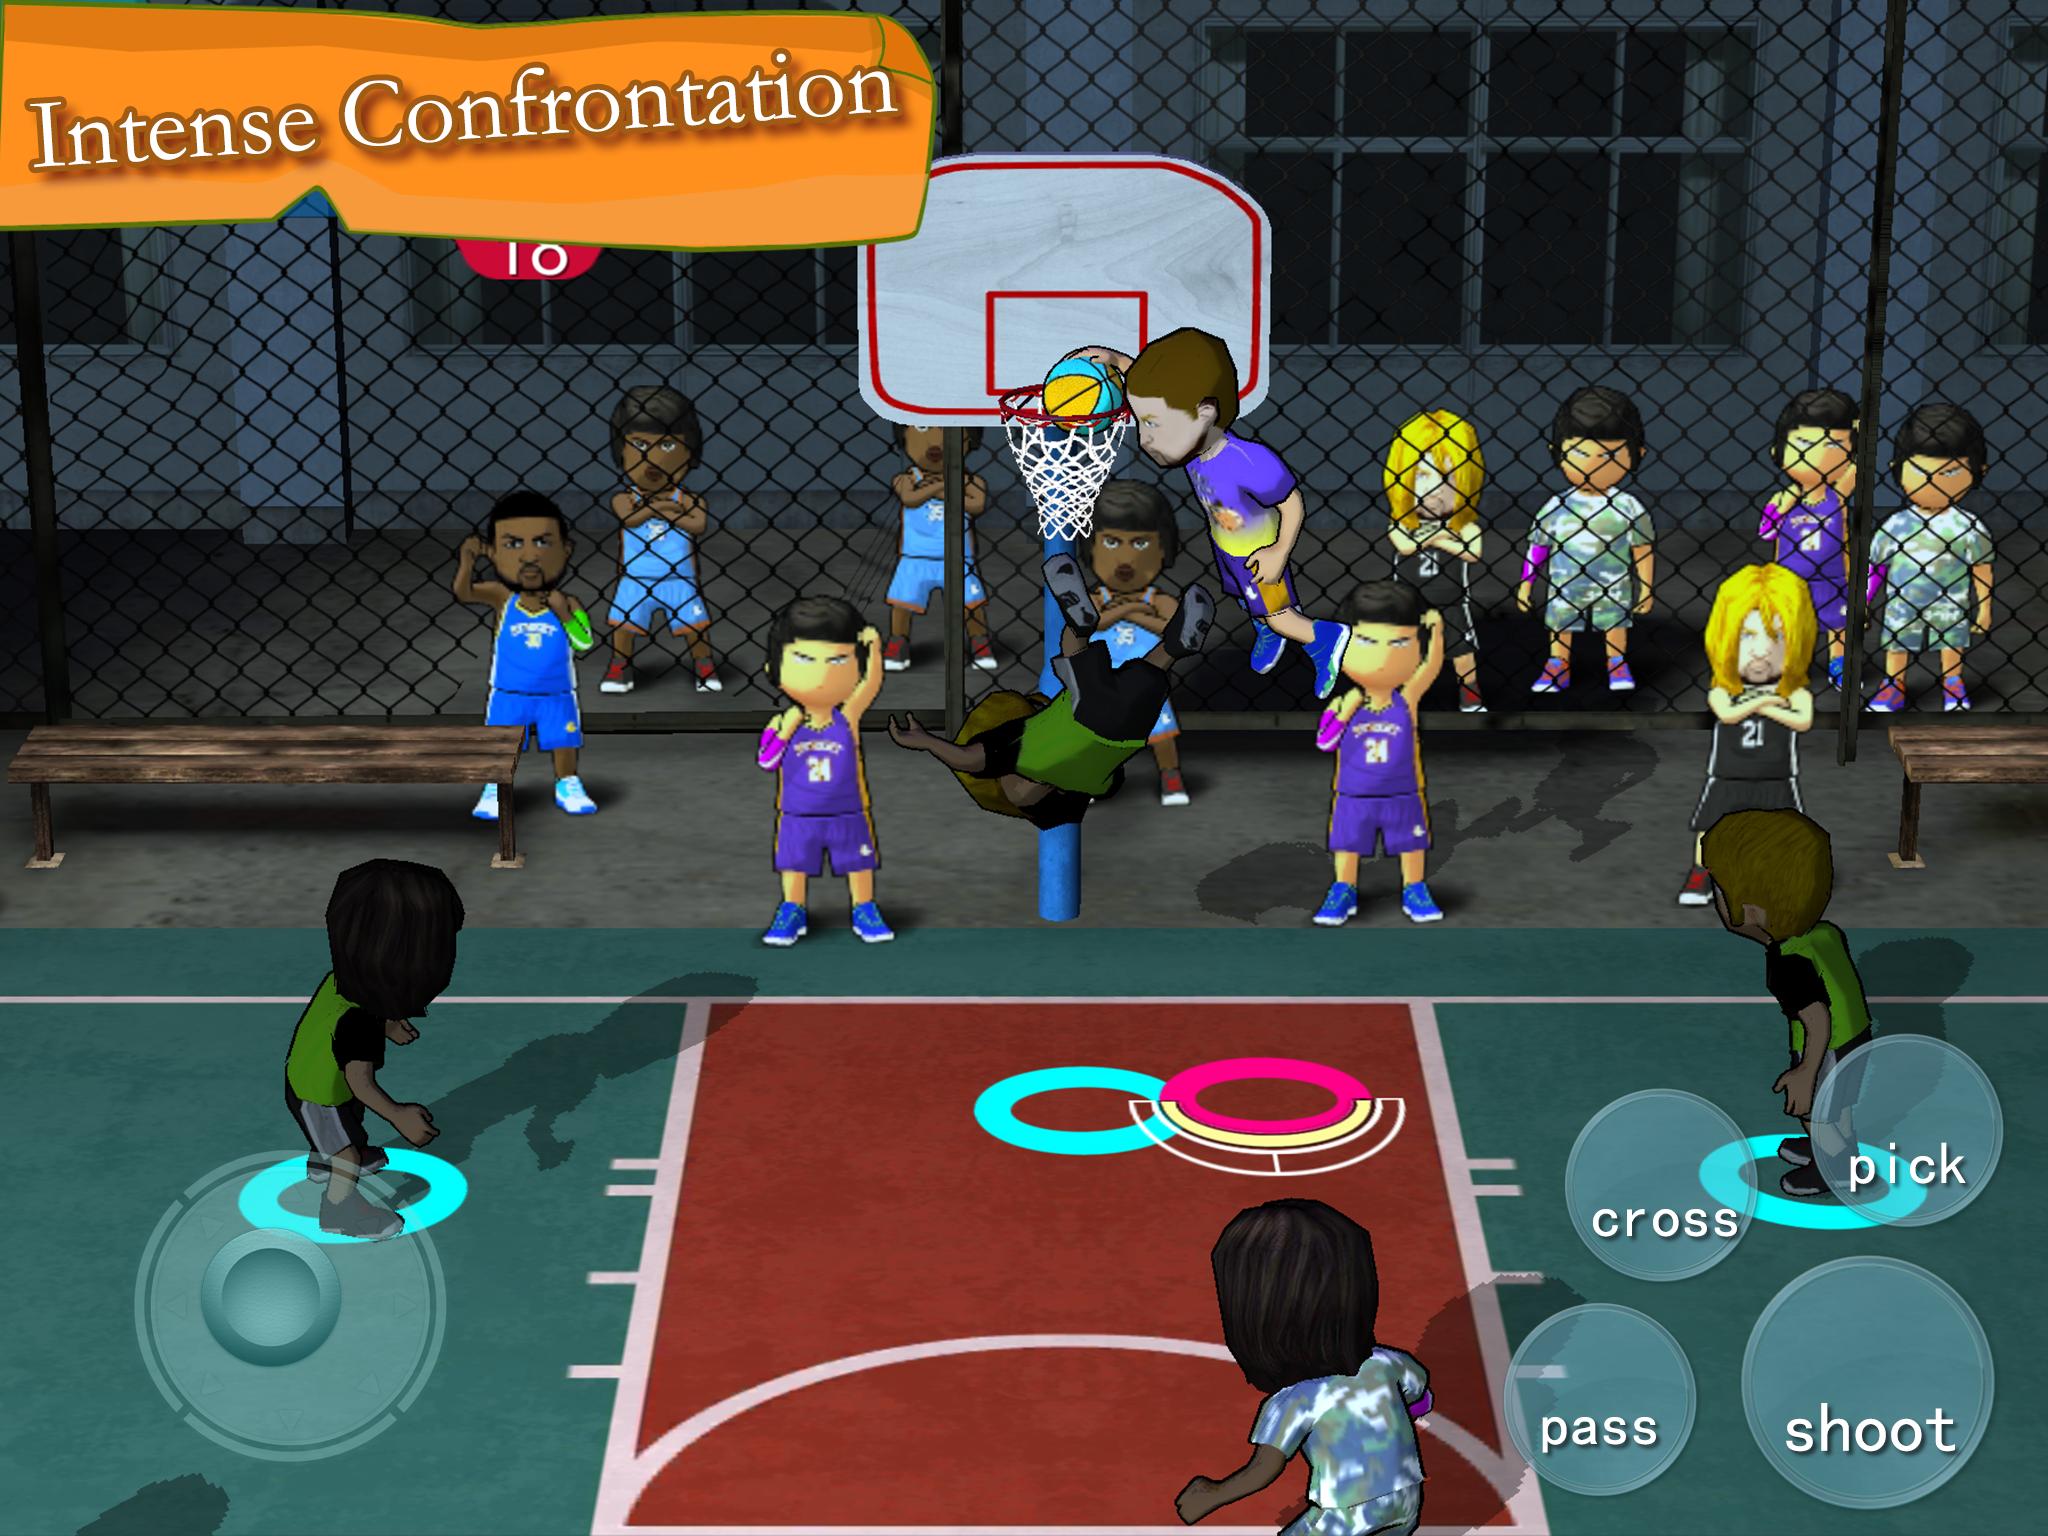 Игра Basketball Association. Street Basketball игра на андроид. Площадка для спортивных игр. Ультимейт стрит баскетбол игра. Игры баскетбол головами